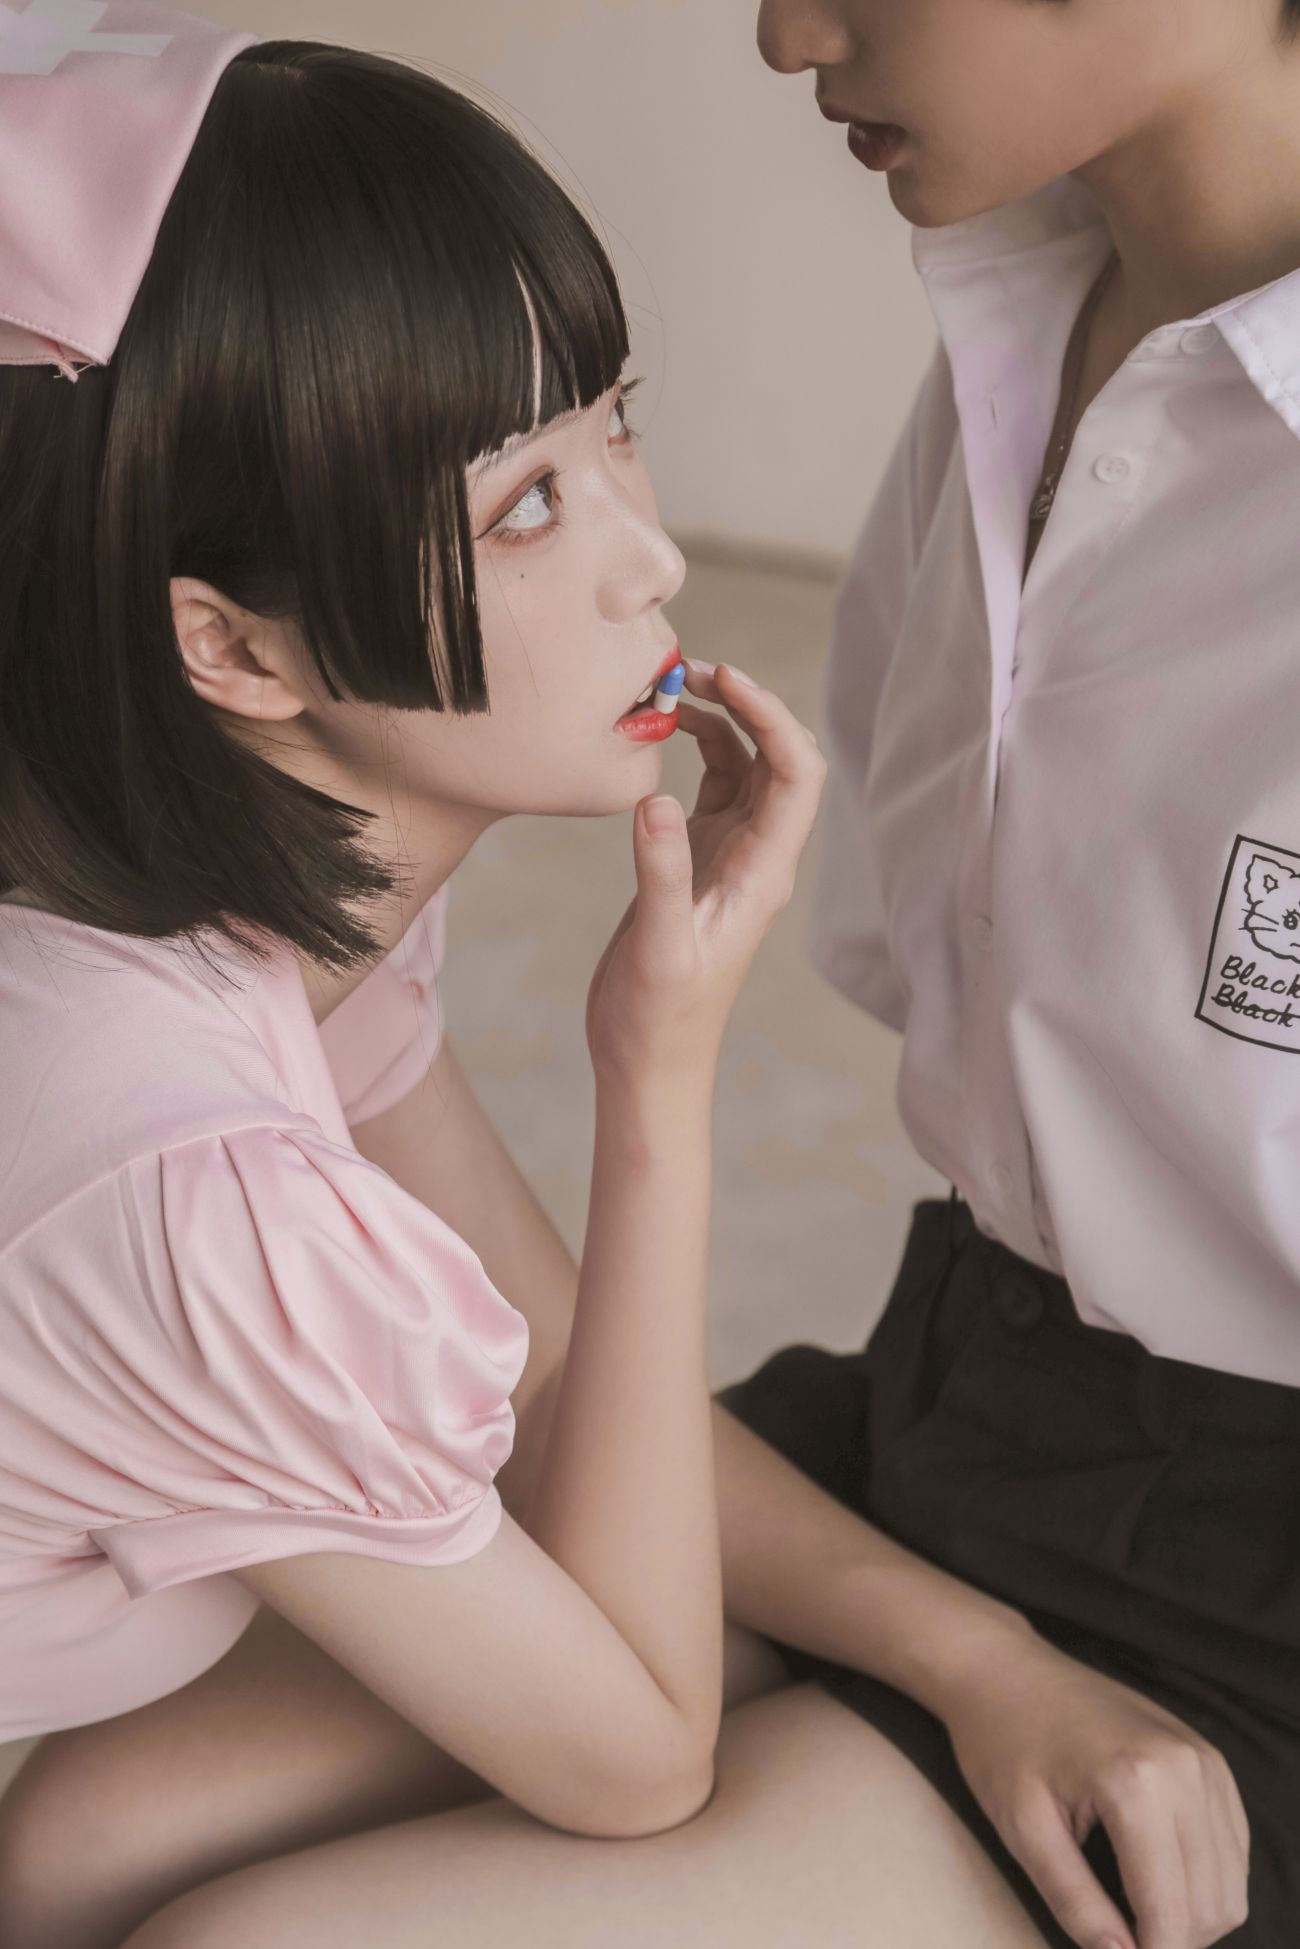 微博美少女Fushii海堂Cosplay性感写真护士 (41)